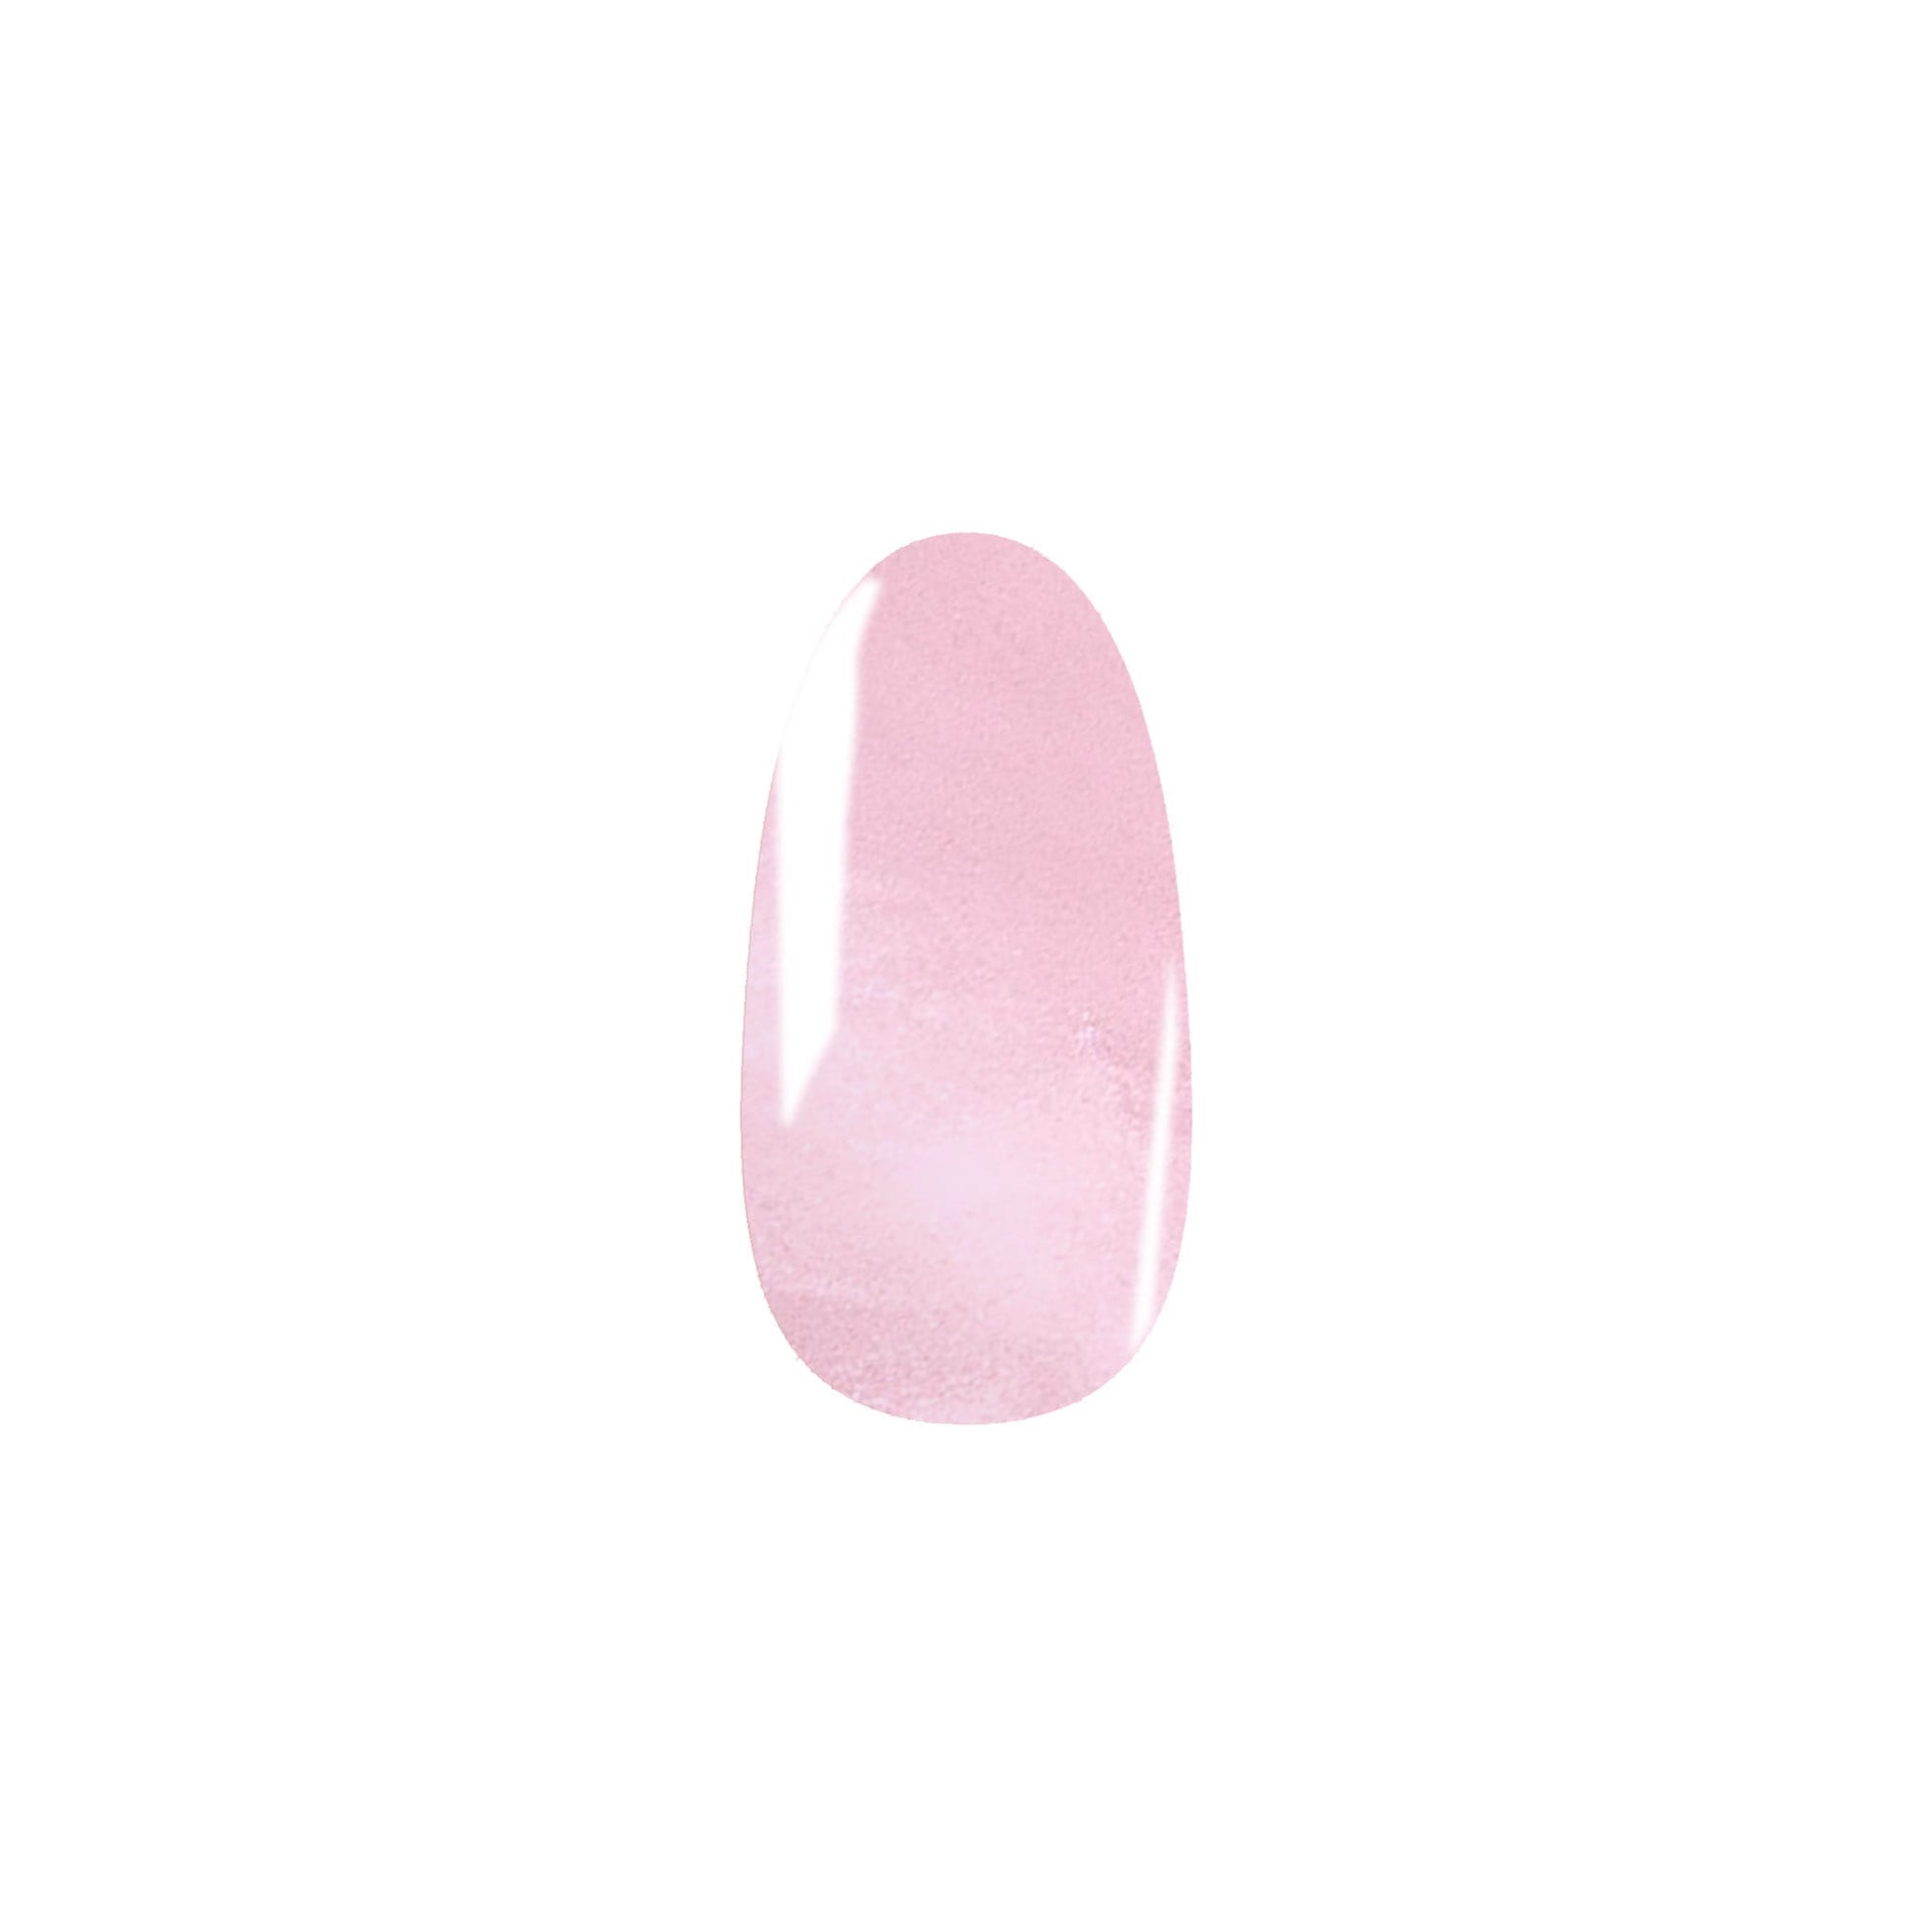 Pink Shimmer HEMA-Free Gel Nail Polish